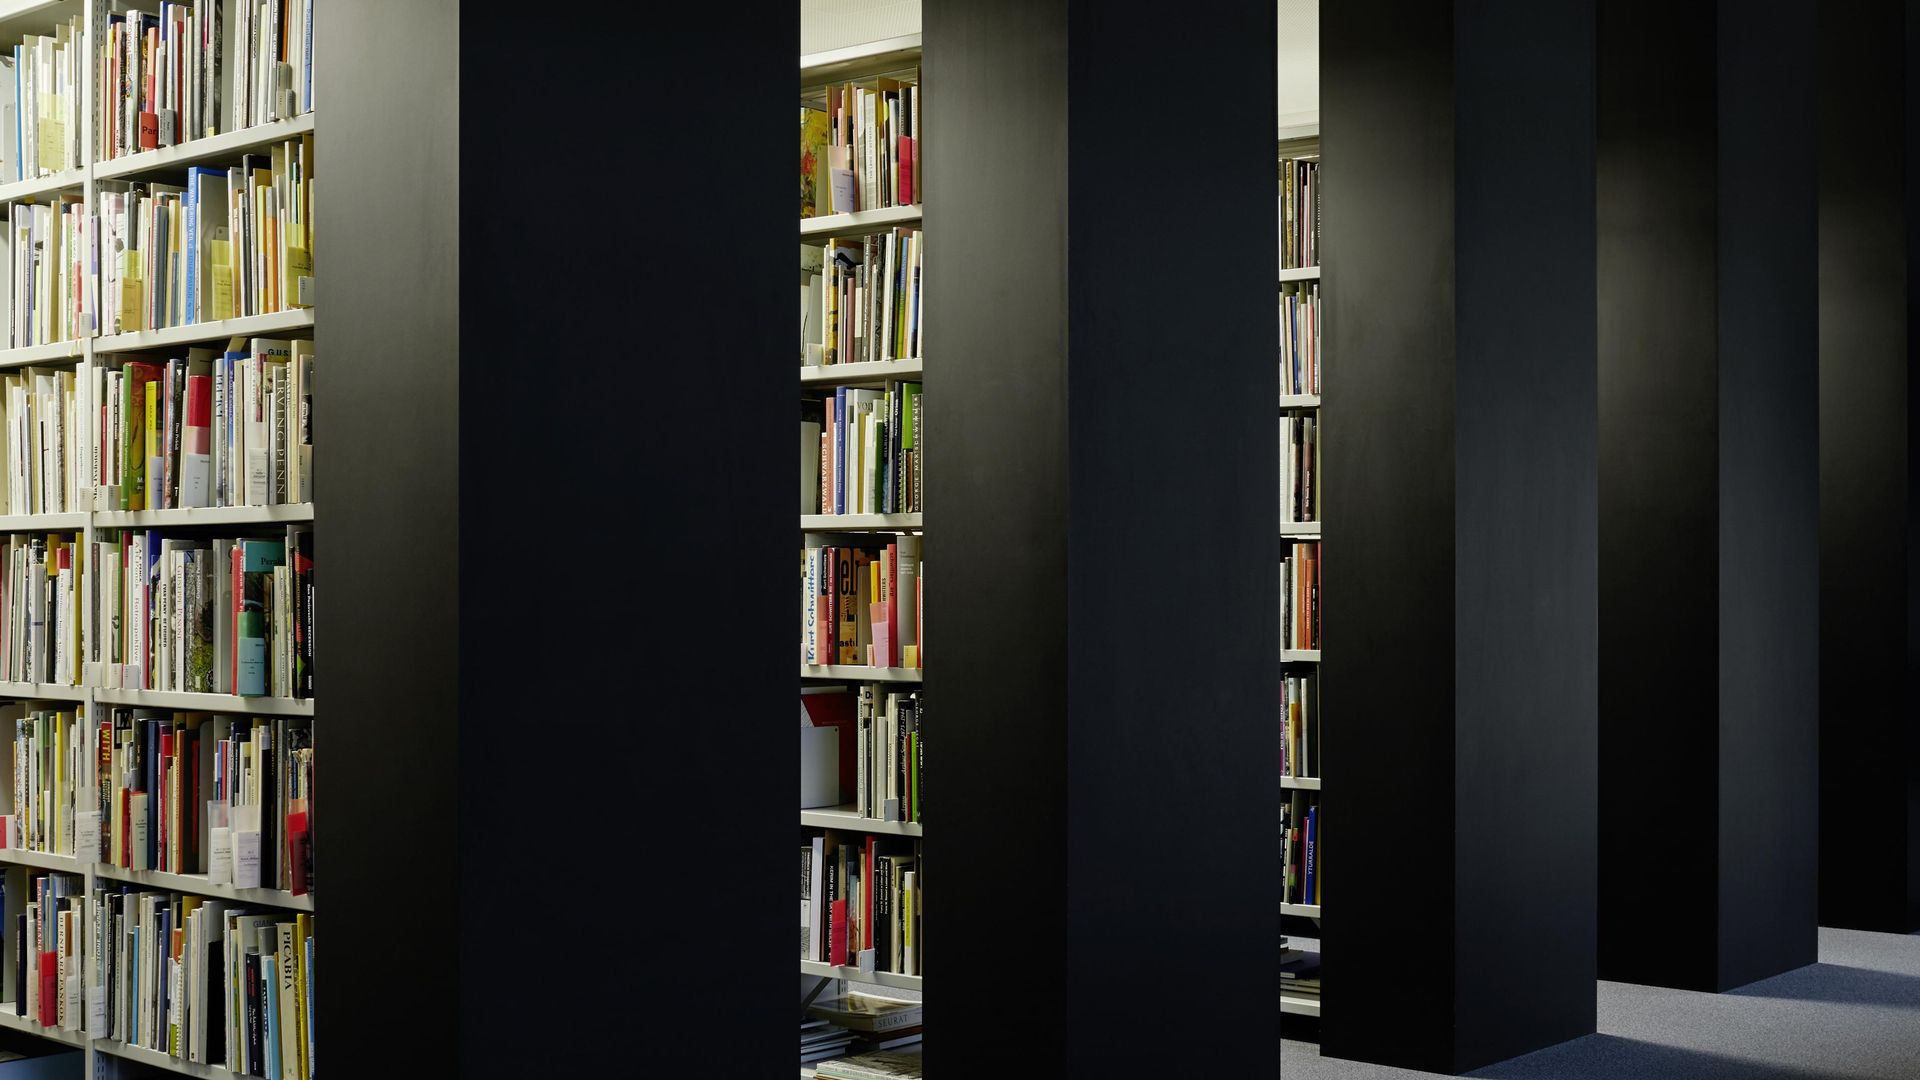 Foto: Parallel angeordnete raumhohe Regale mit Büchern.